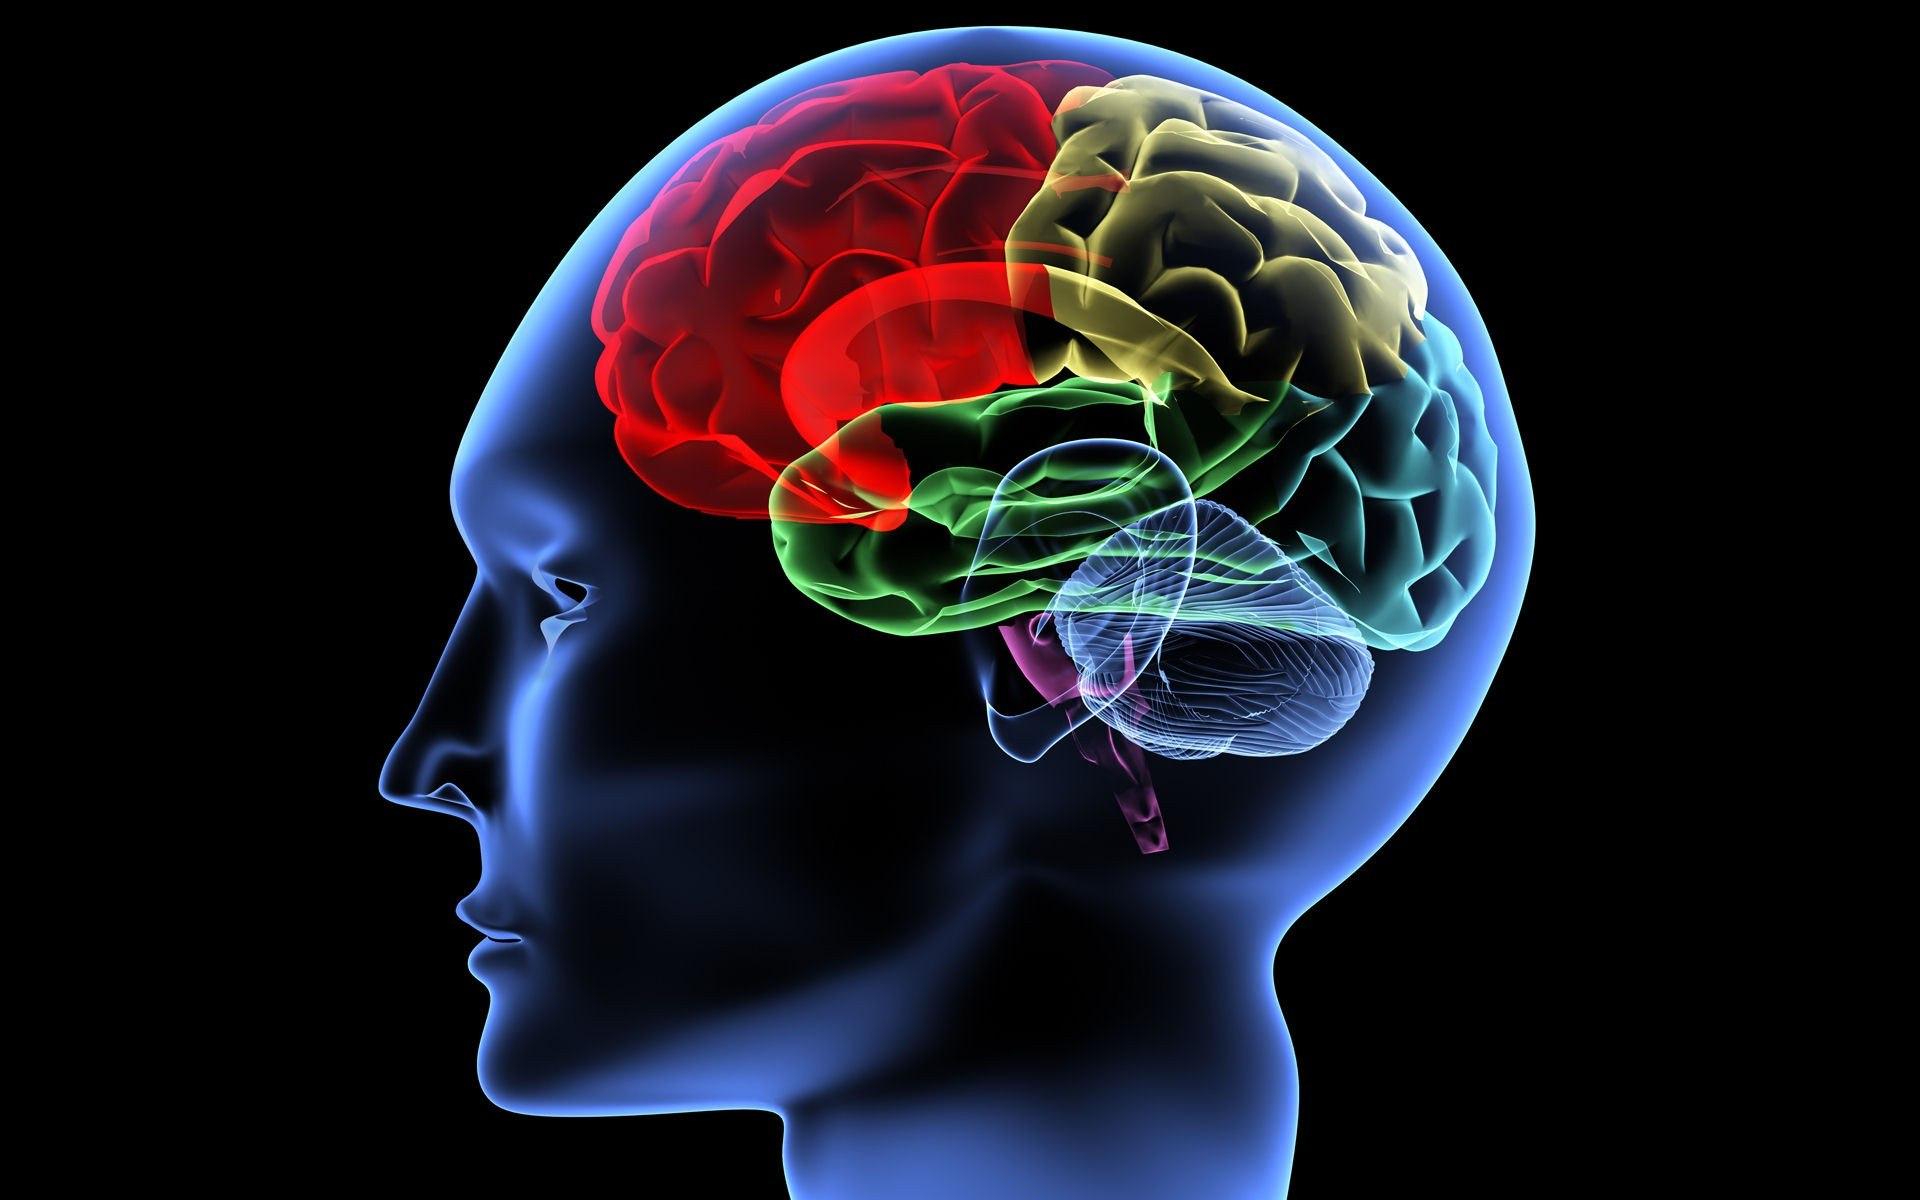 Мозг принимает сигналы. Изображение мозга человека. Мозг картинка. Развитый головной мозг.